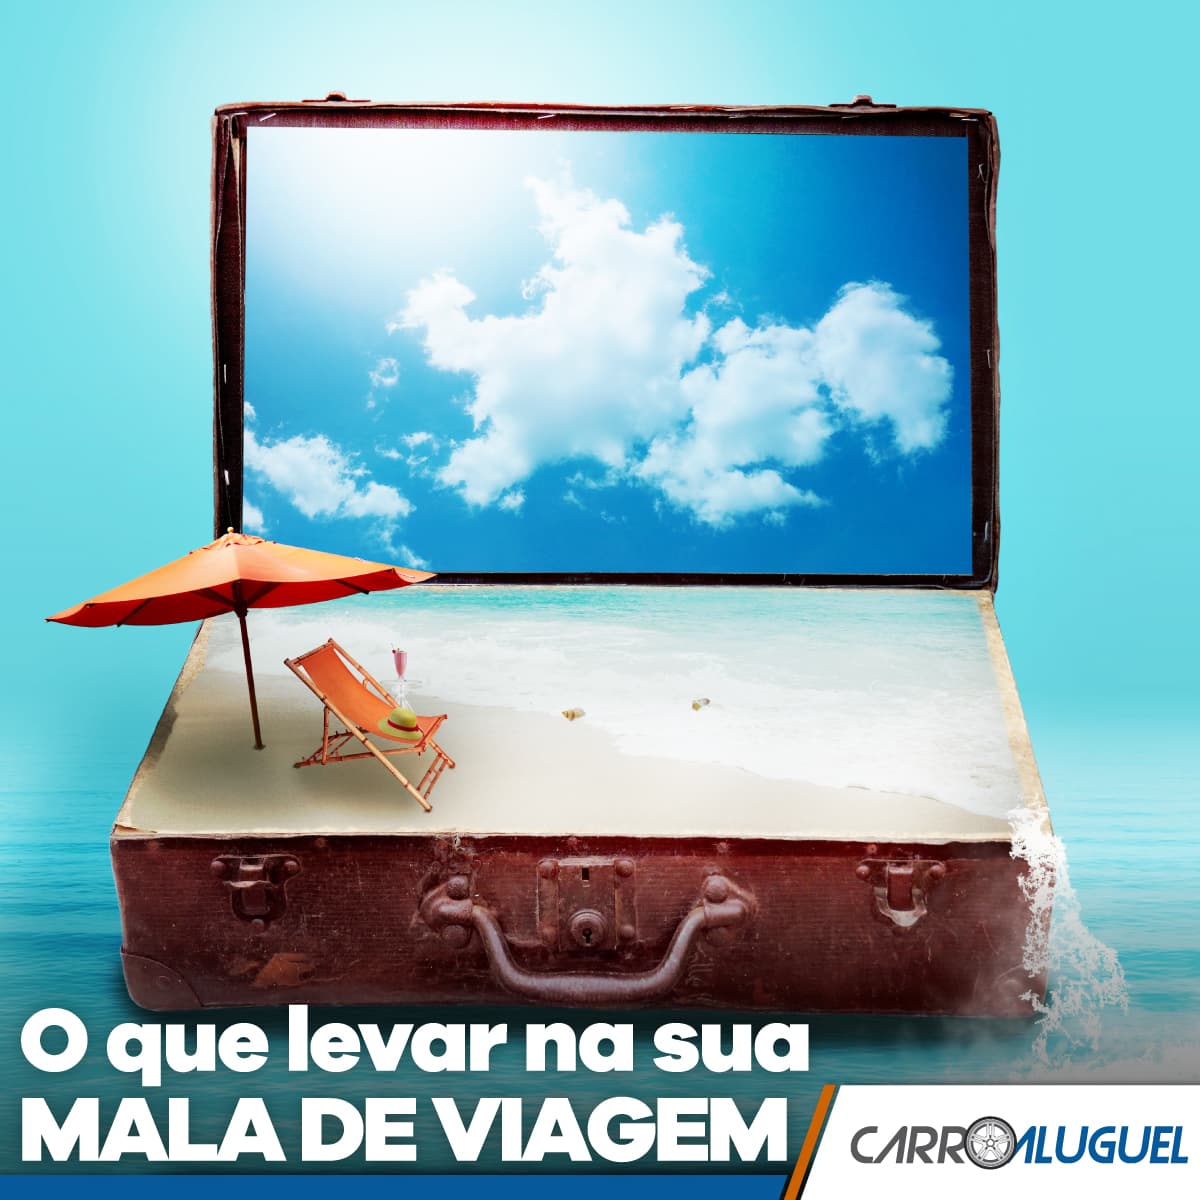 Imagem figurativa de uma praia dentro de uma mala de viagem com o título: O que levar na sua mala de viagem?